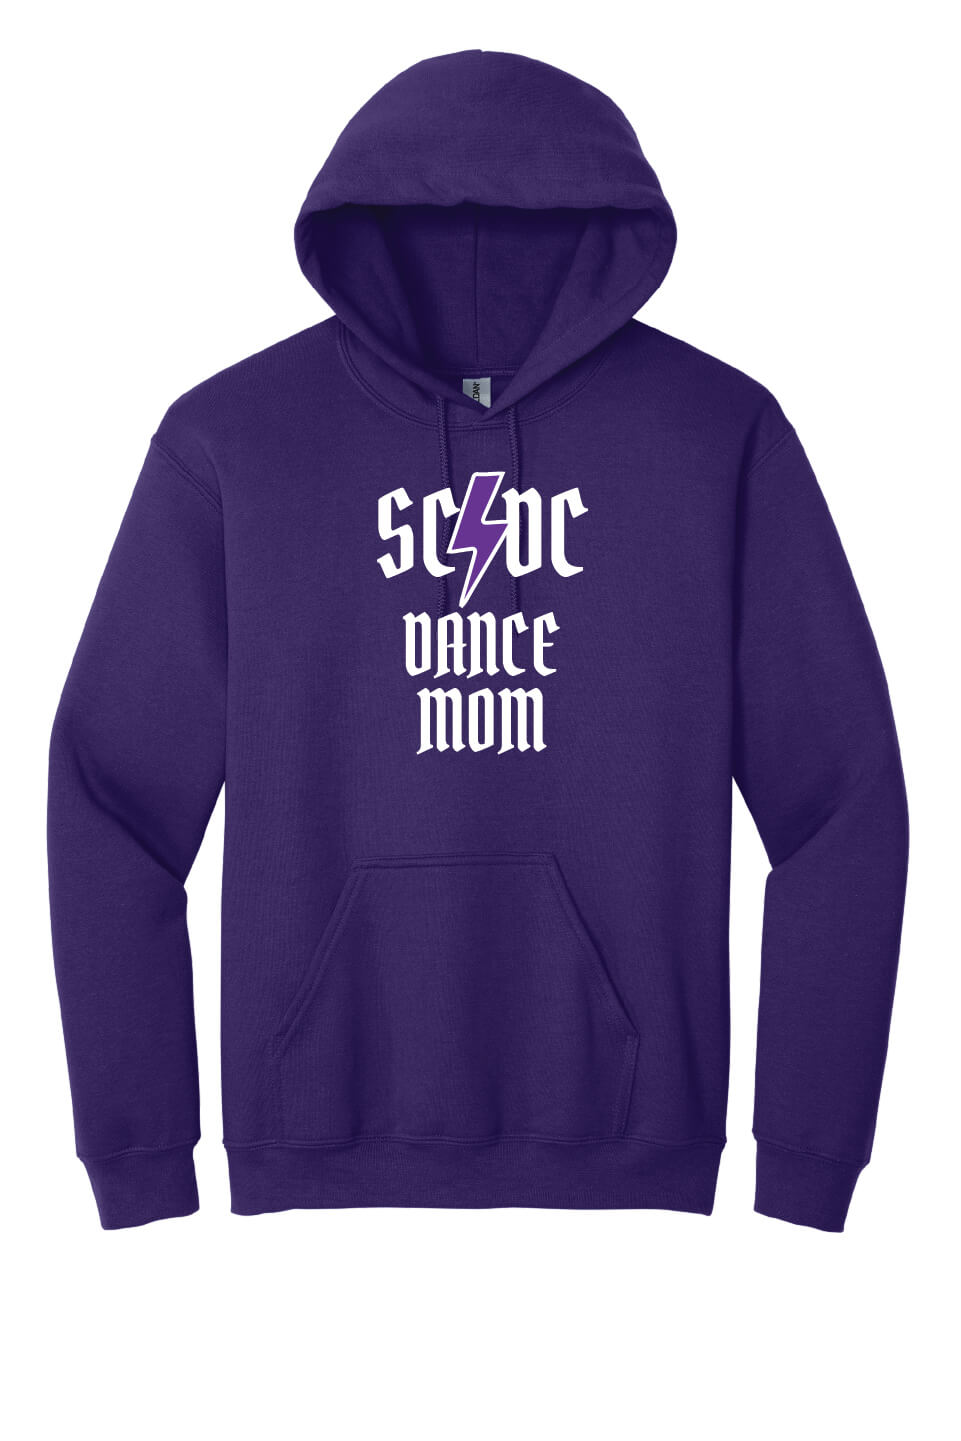 SCDC Mom Hoodie purple